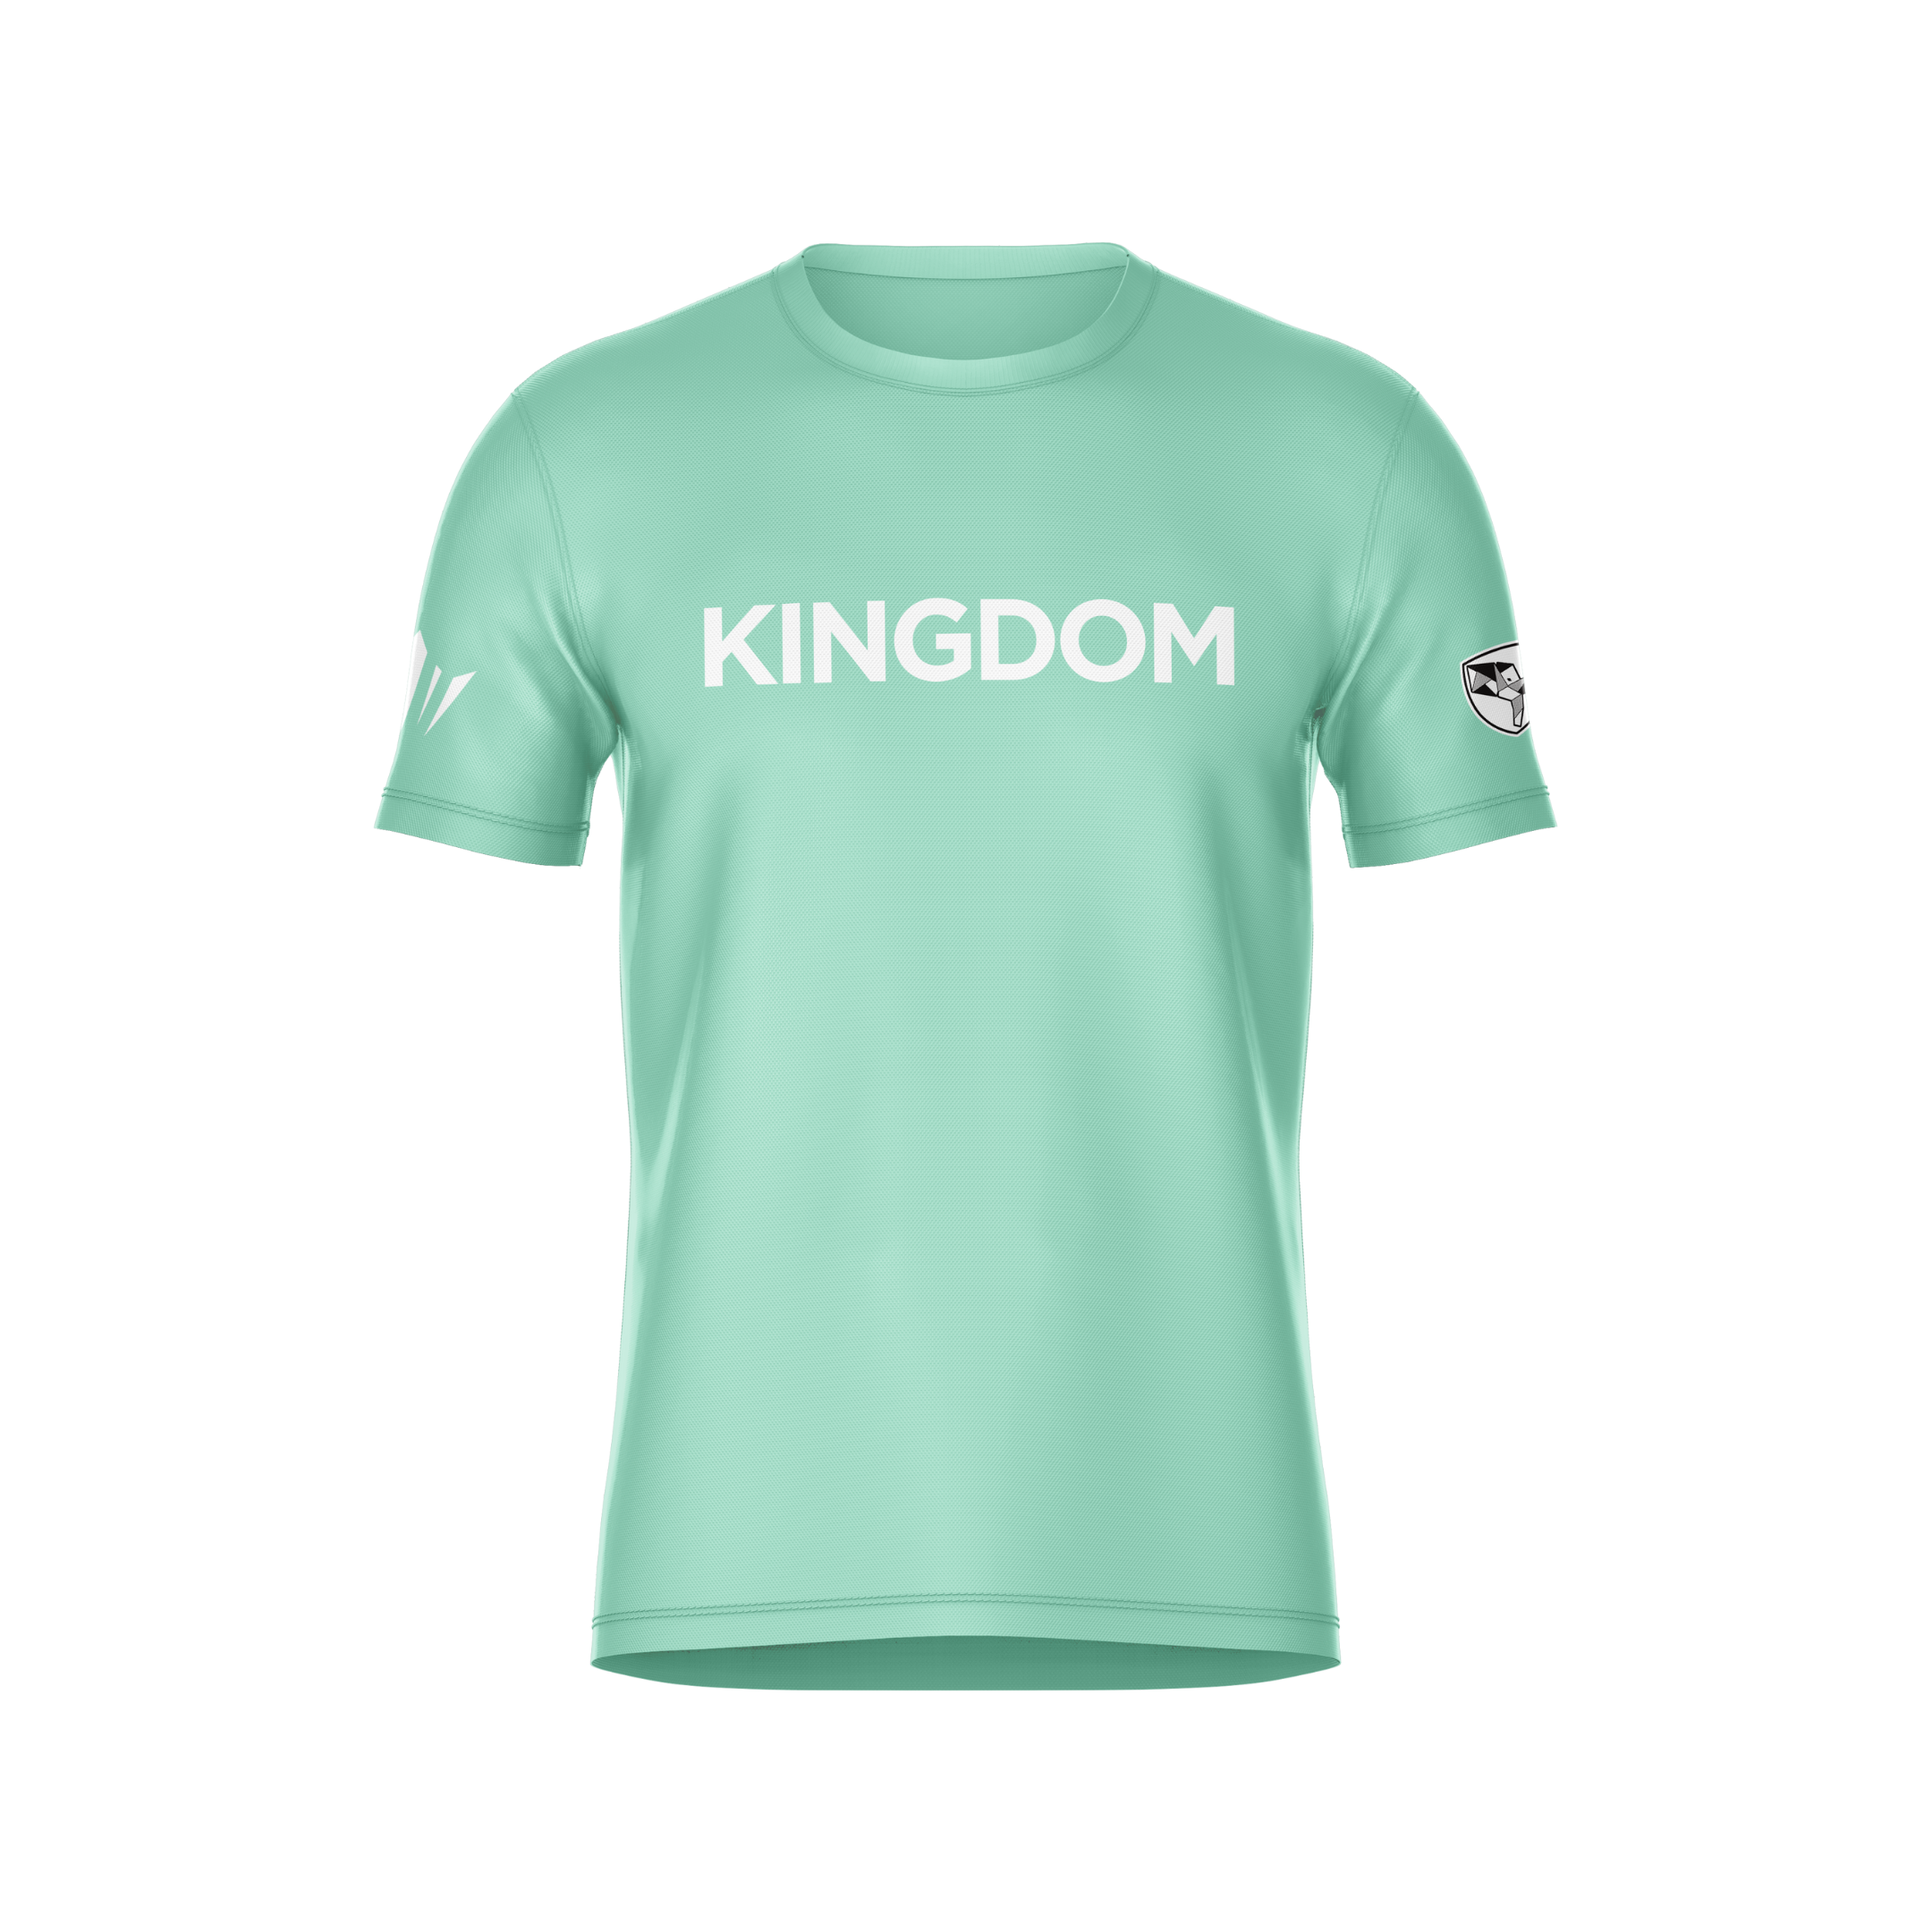 Kingdom Tee - Green